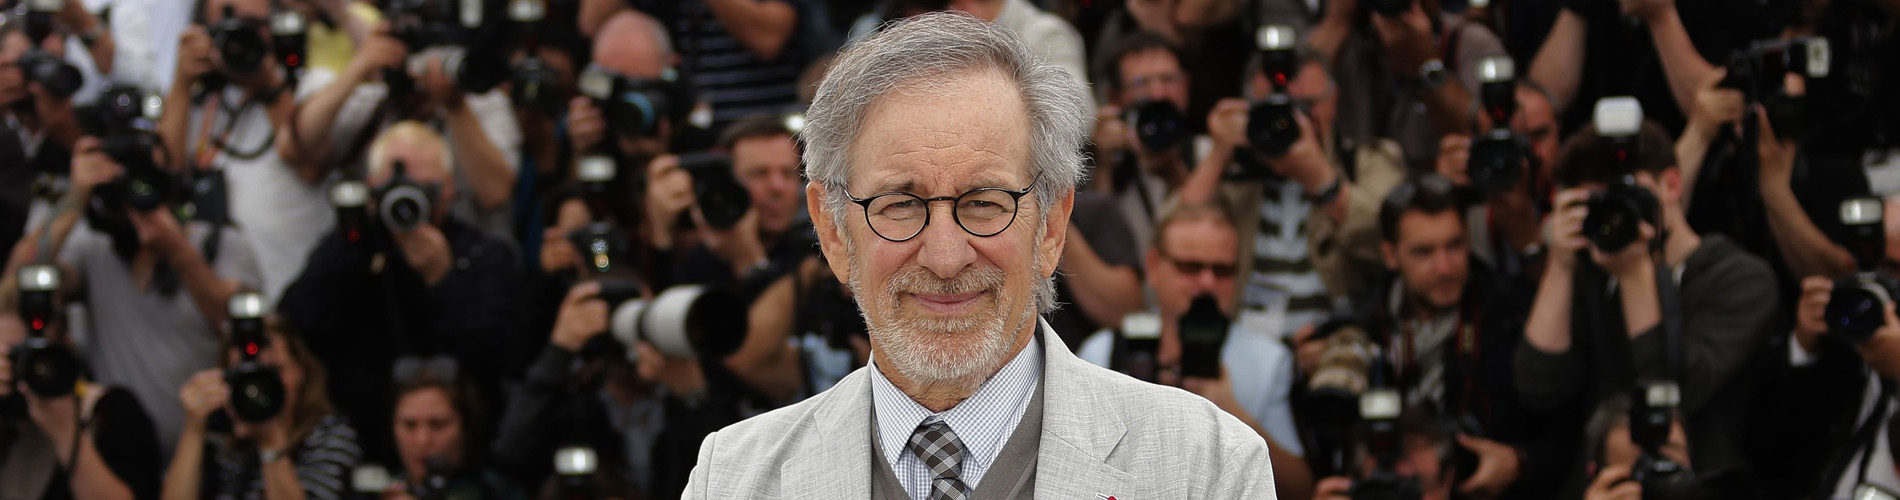 Steven Spielberg: La suma de todos los miedos